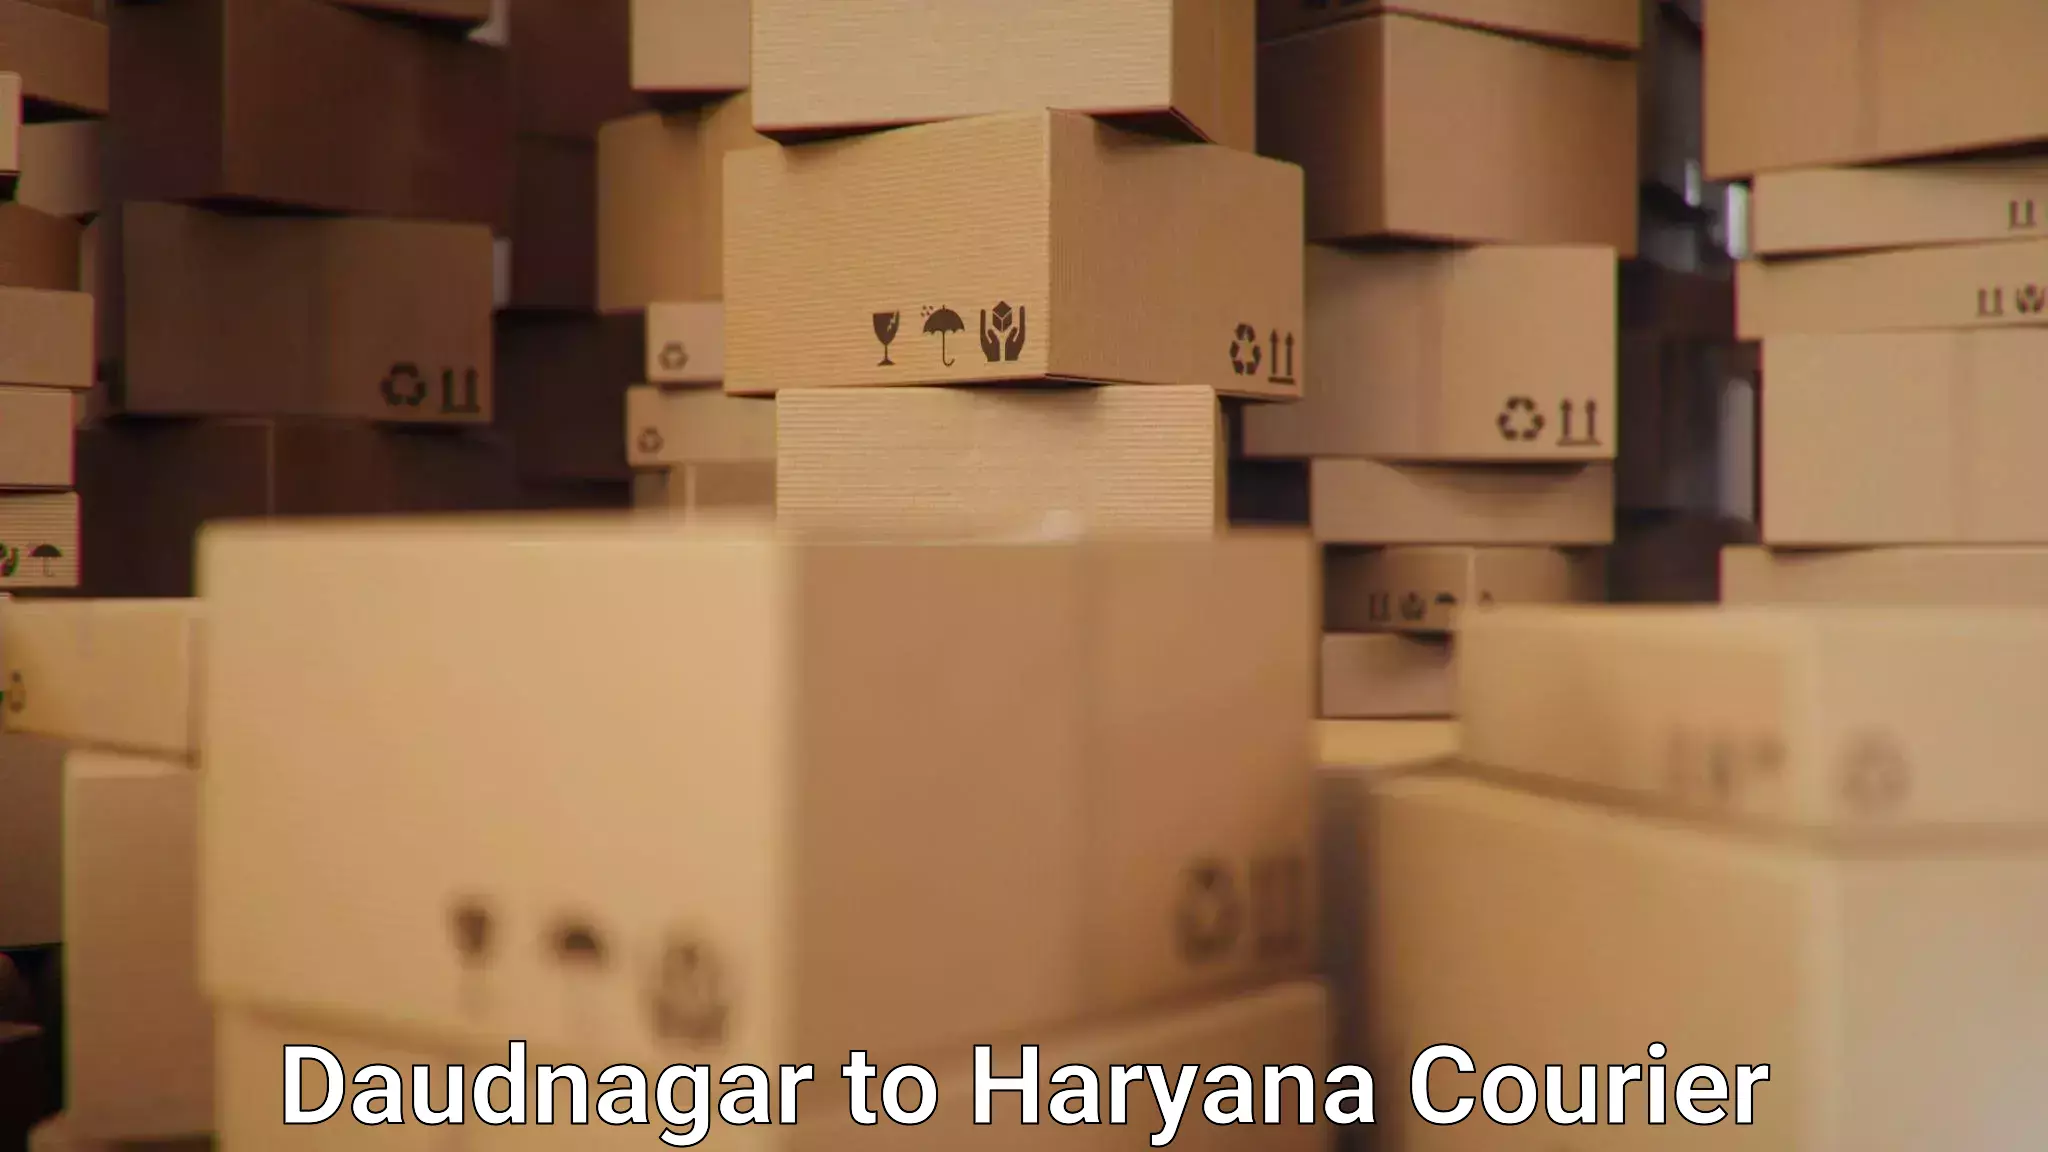 Advanced shipping technology Daudnagar to Bahadurgarh